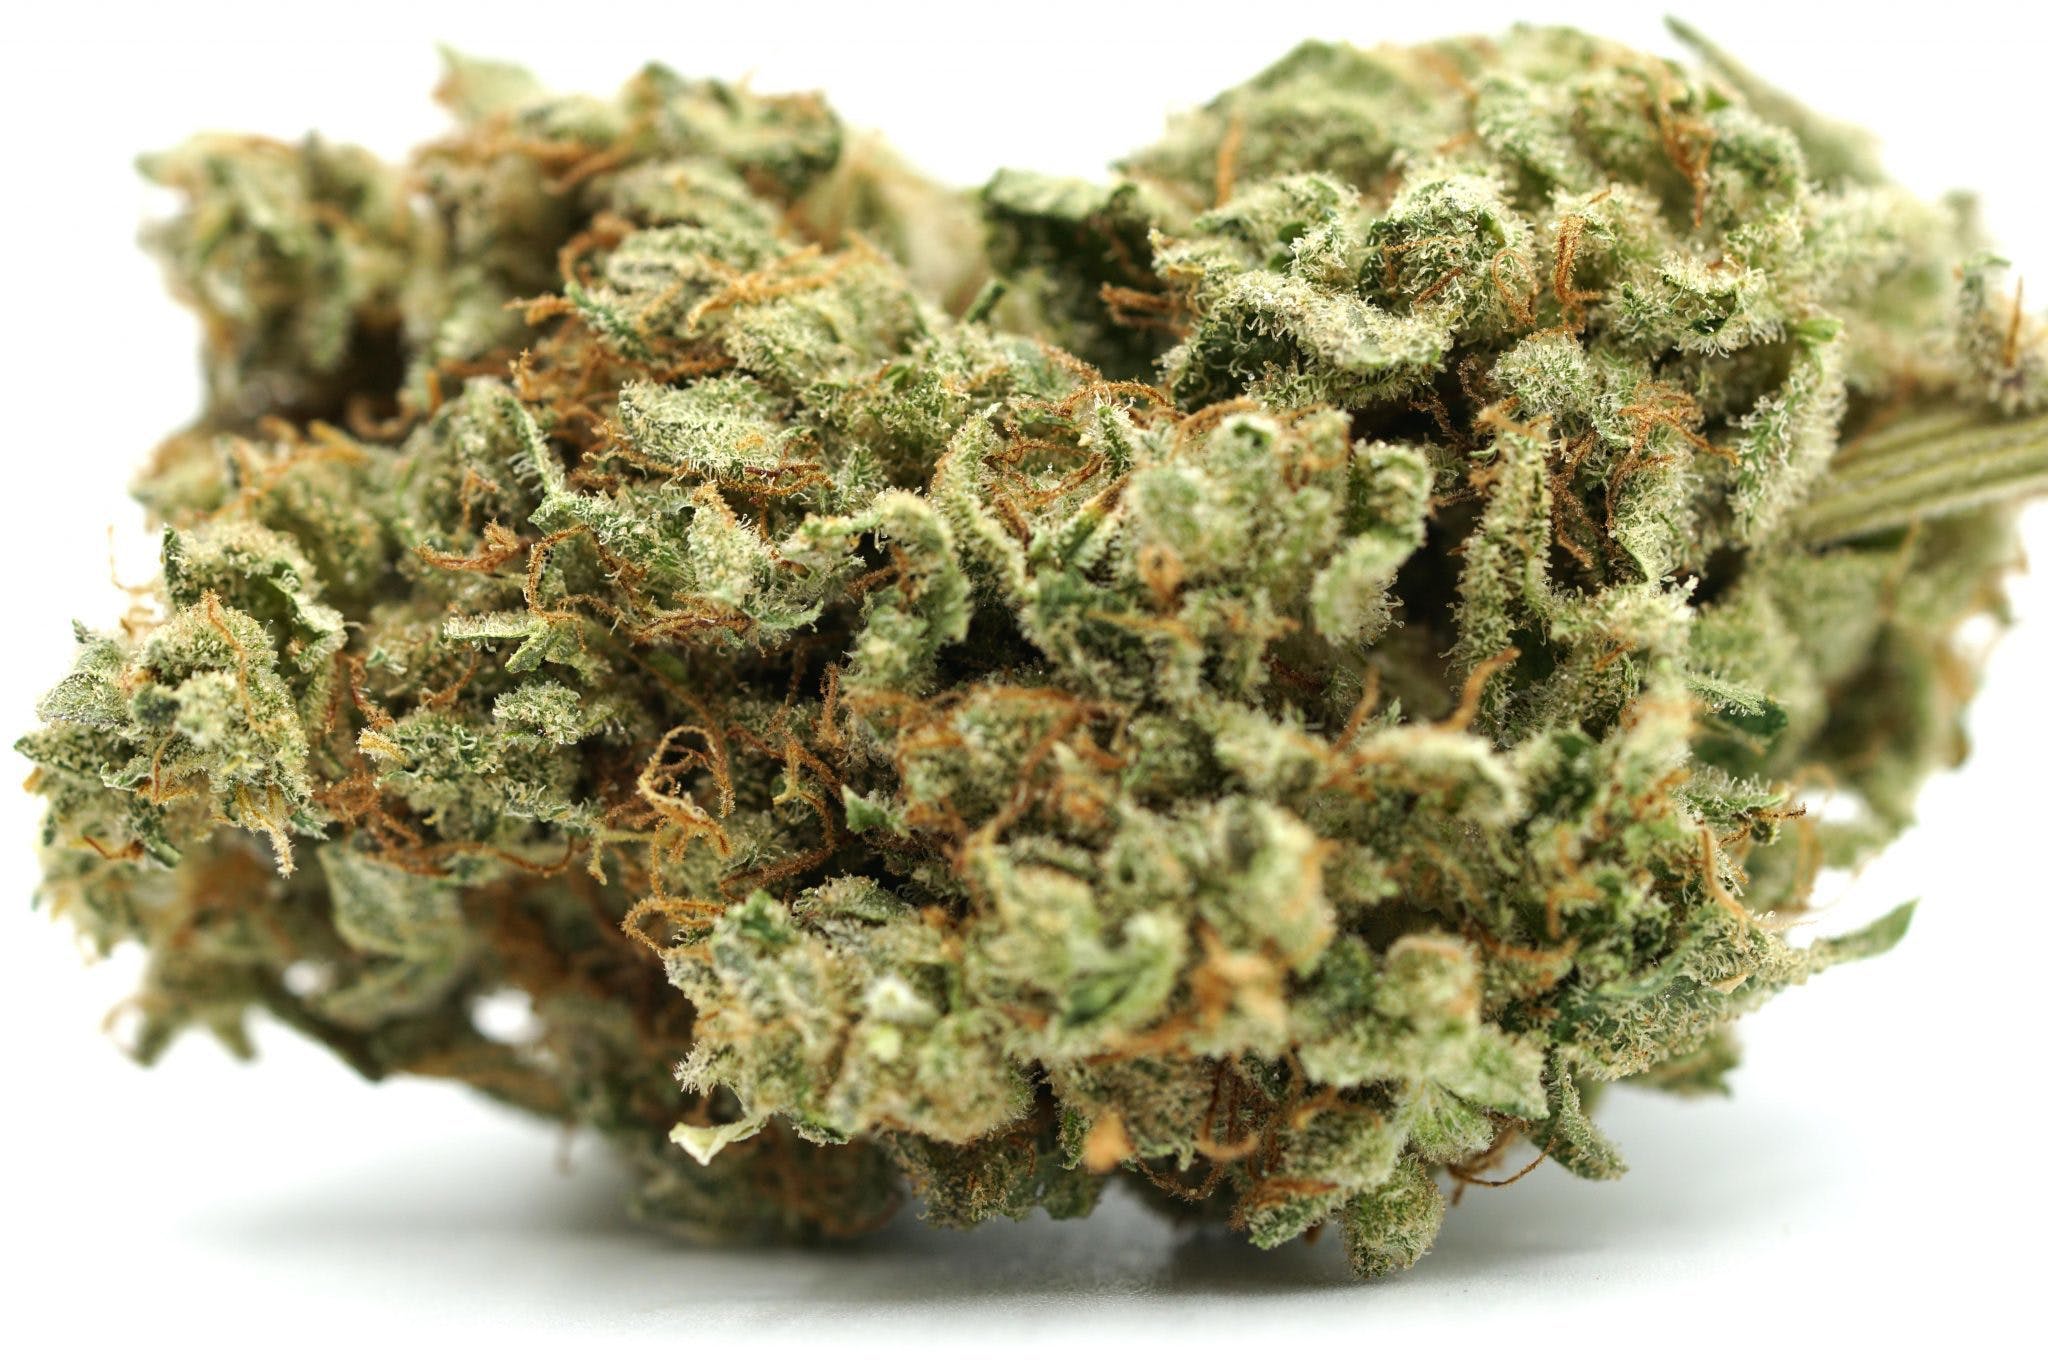 marijuana-dispensaries-whittier-wonders-in-whittier-topshelf-og-kush-5g40-2oz390-qp760